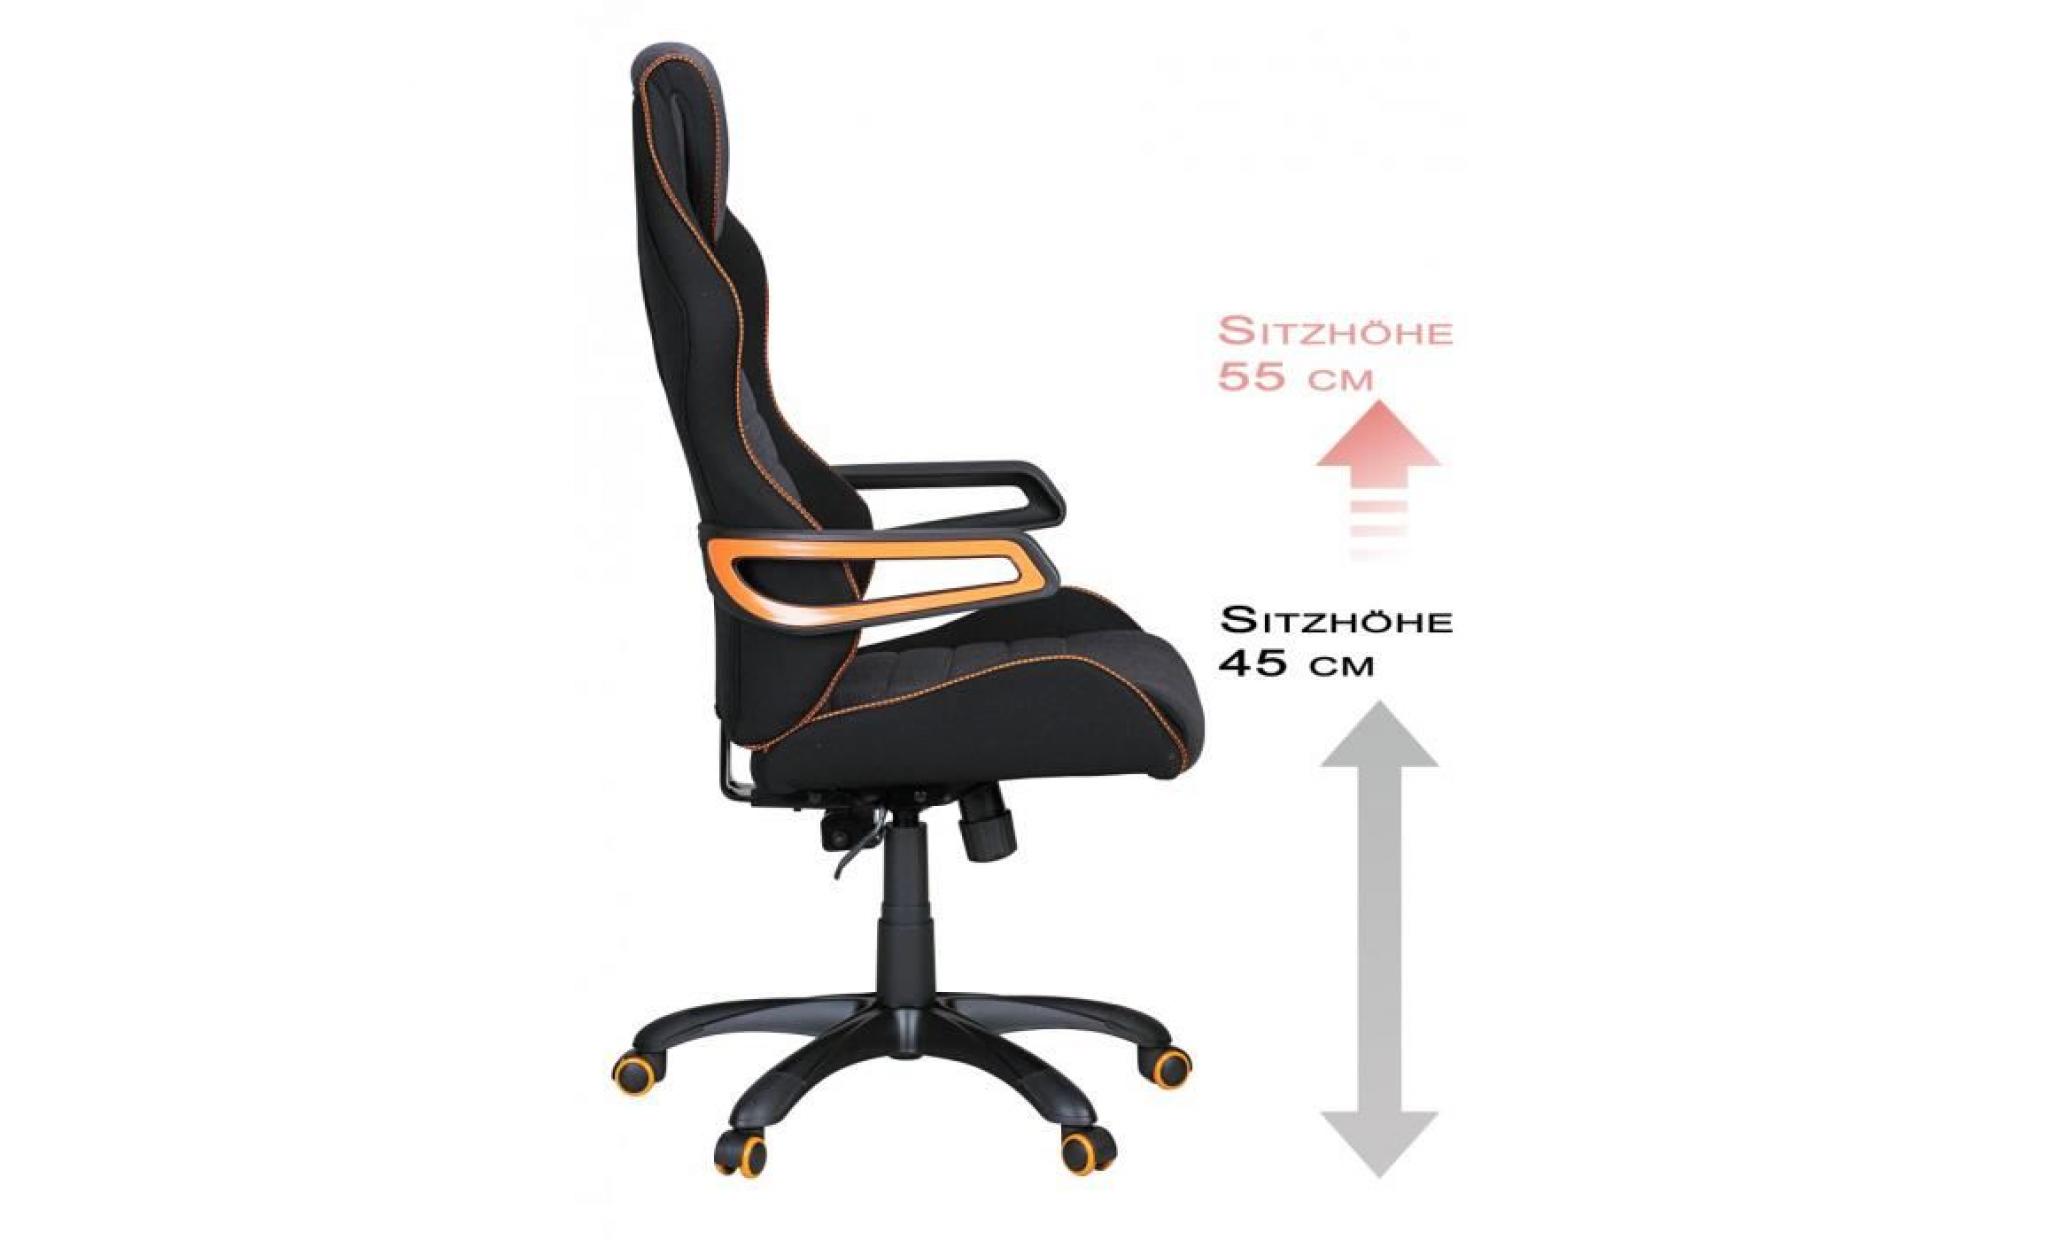 chaise baquet de bureau pivotante en tissu coloris noir, gris et orange pas cher